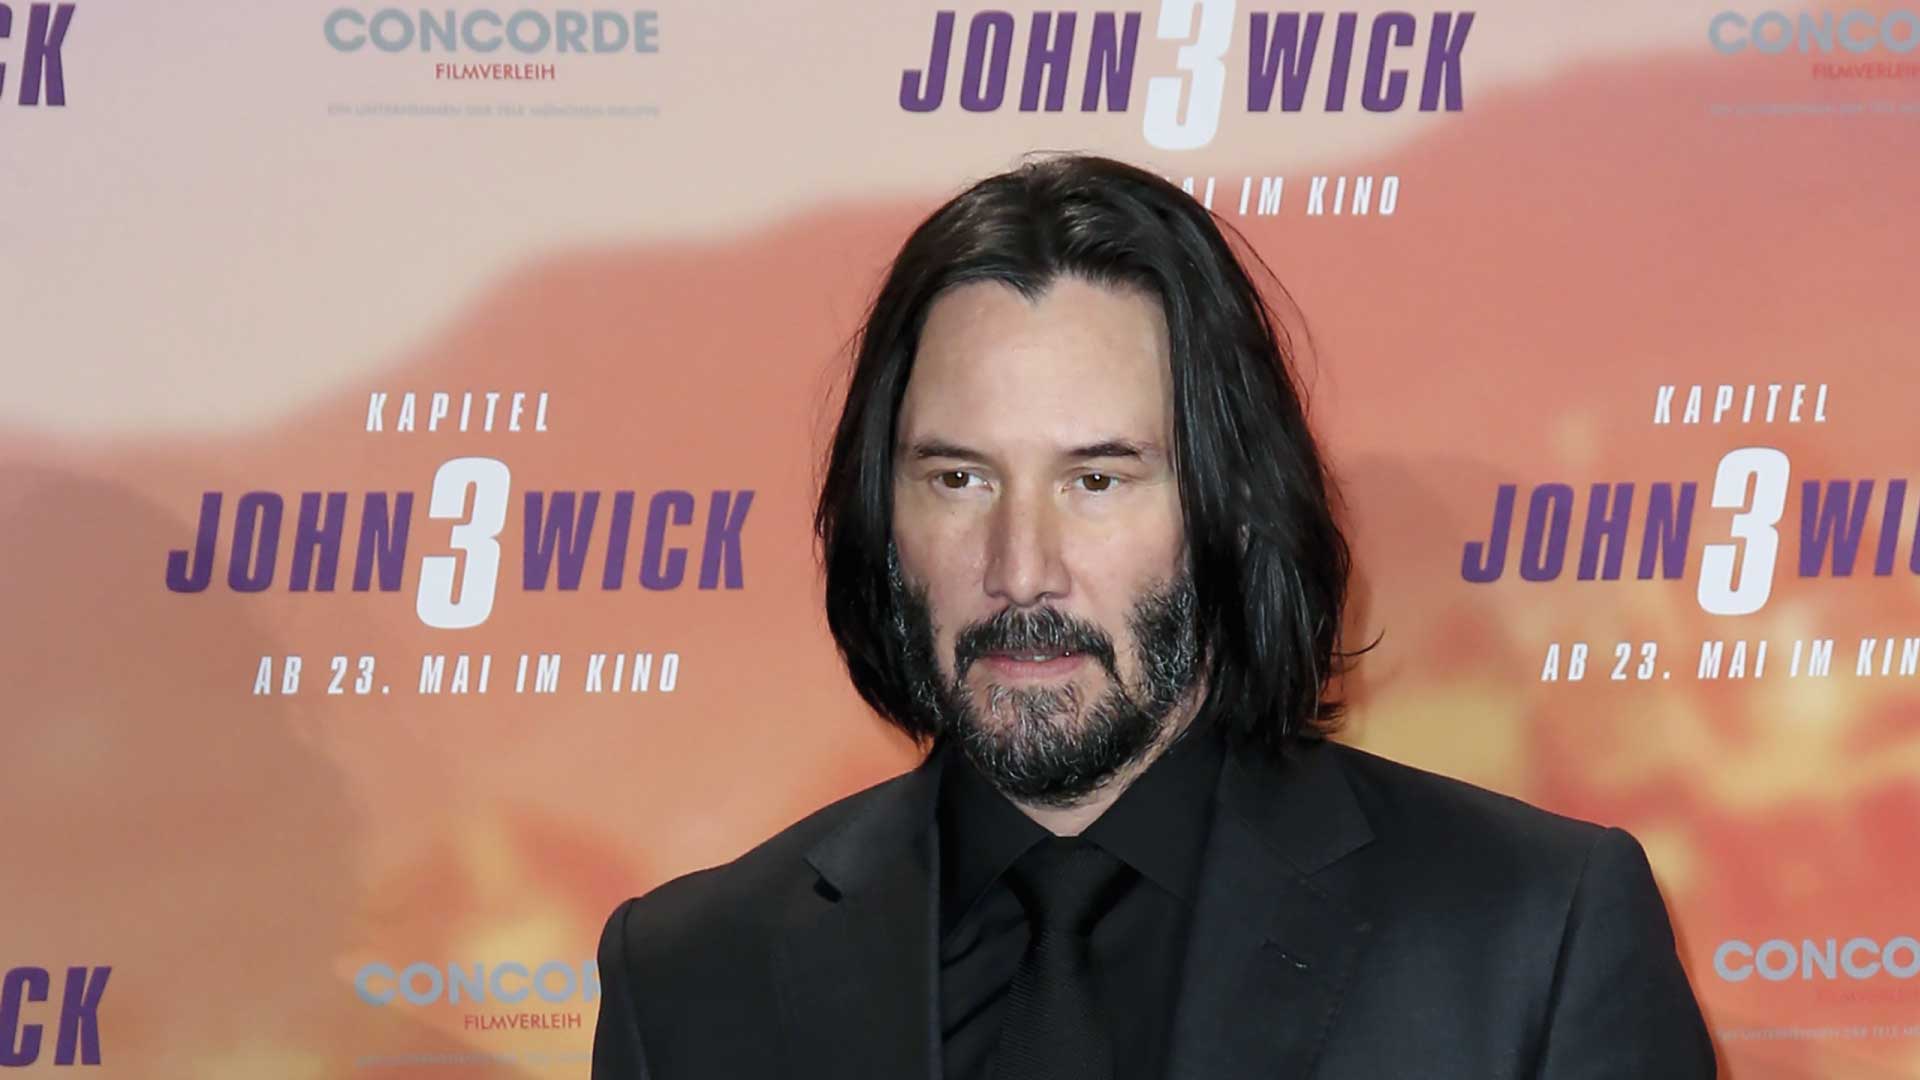 Revelan las otras opciones de actores para interpretar “John Wick” en lugar de Keanu Reeves.